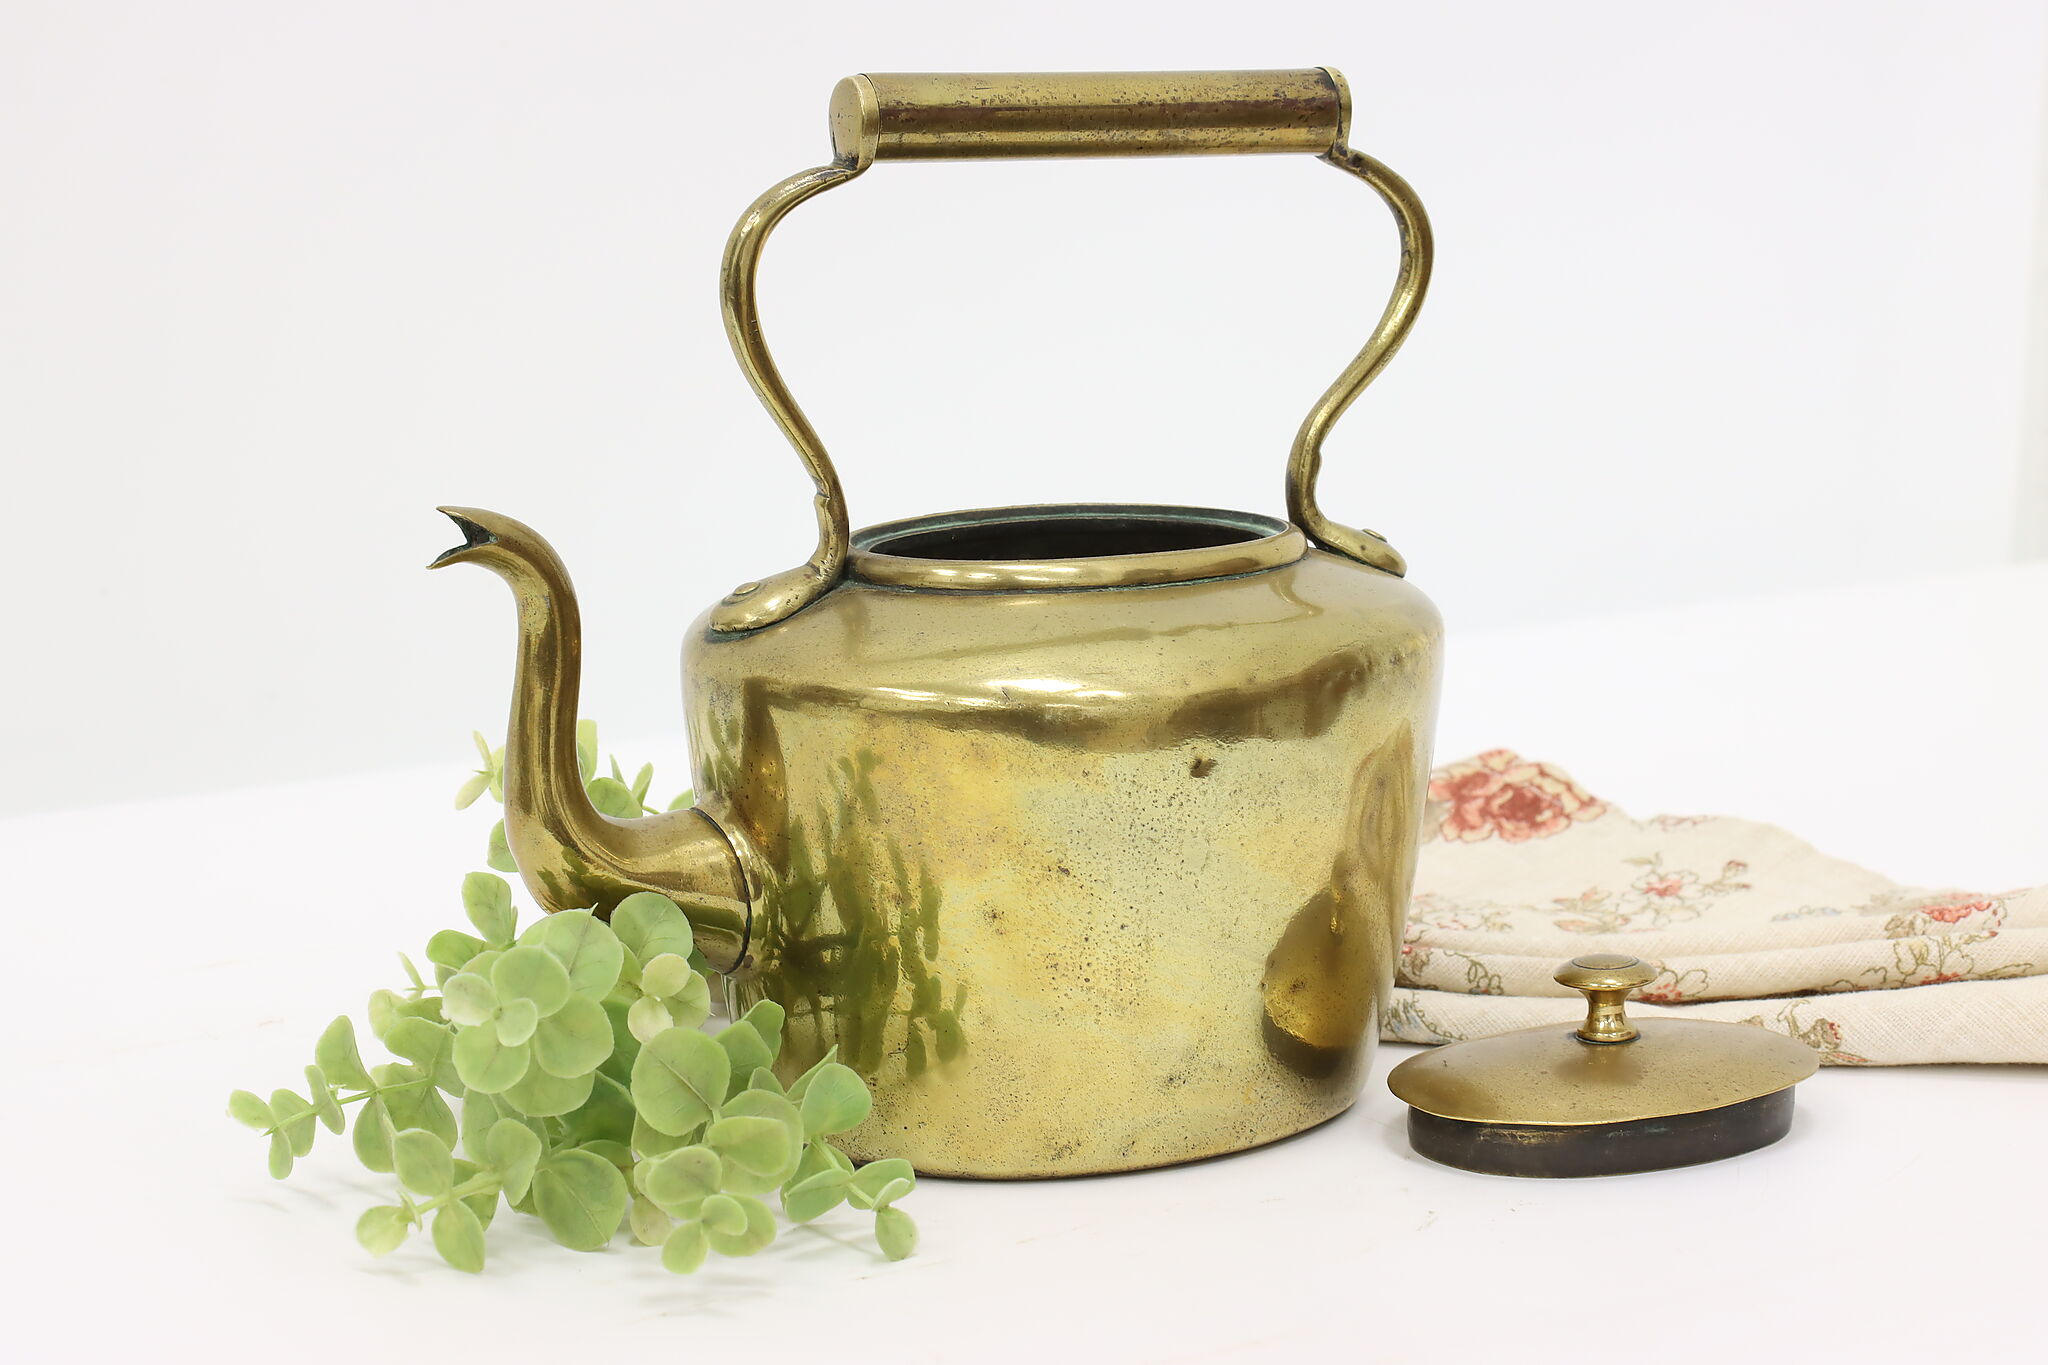 Farmhouse Antique Brass Samovar Tea Kettle, Arabic Inscriptions